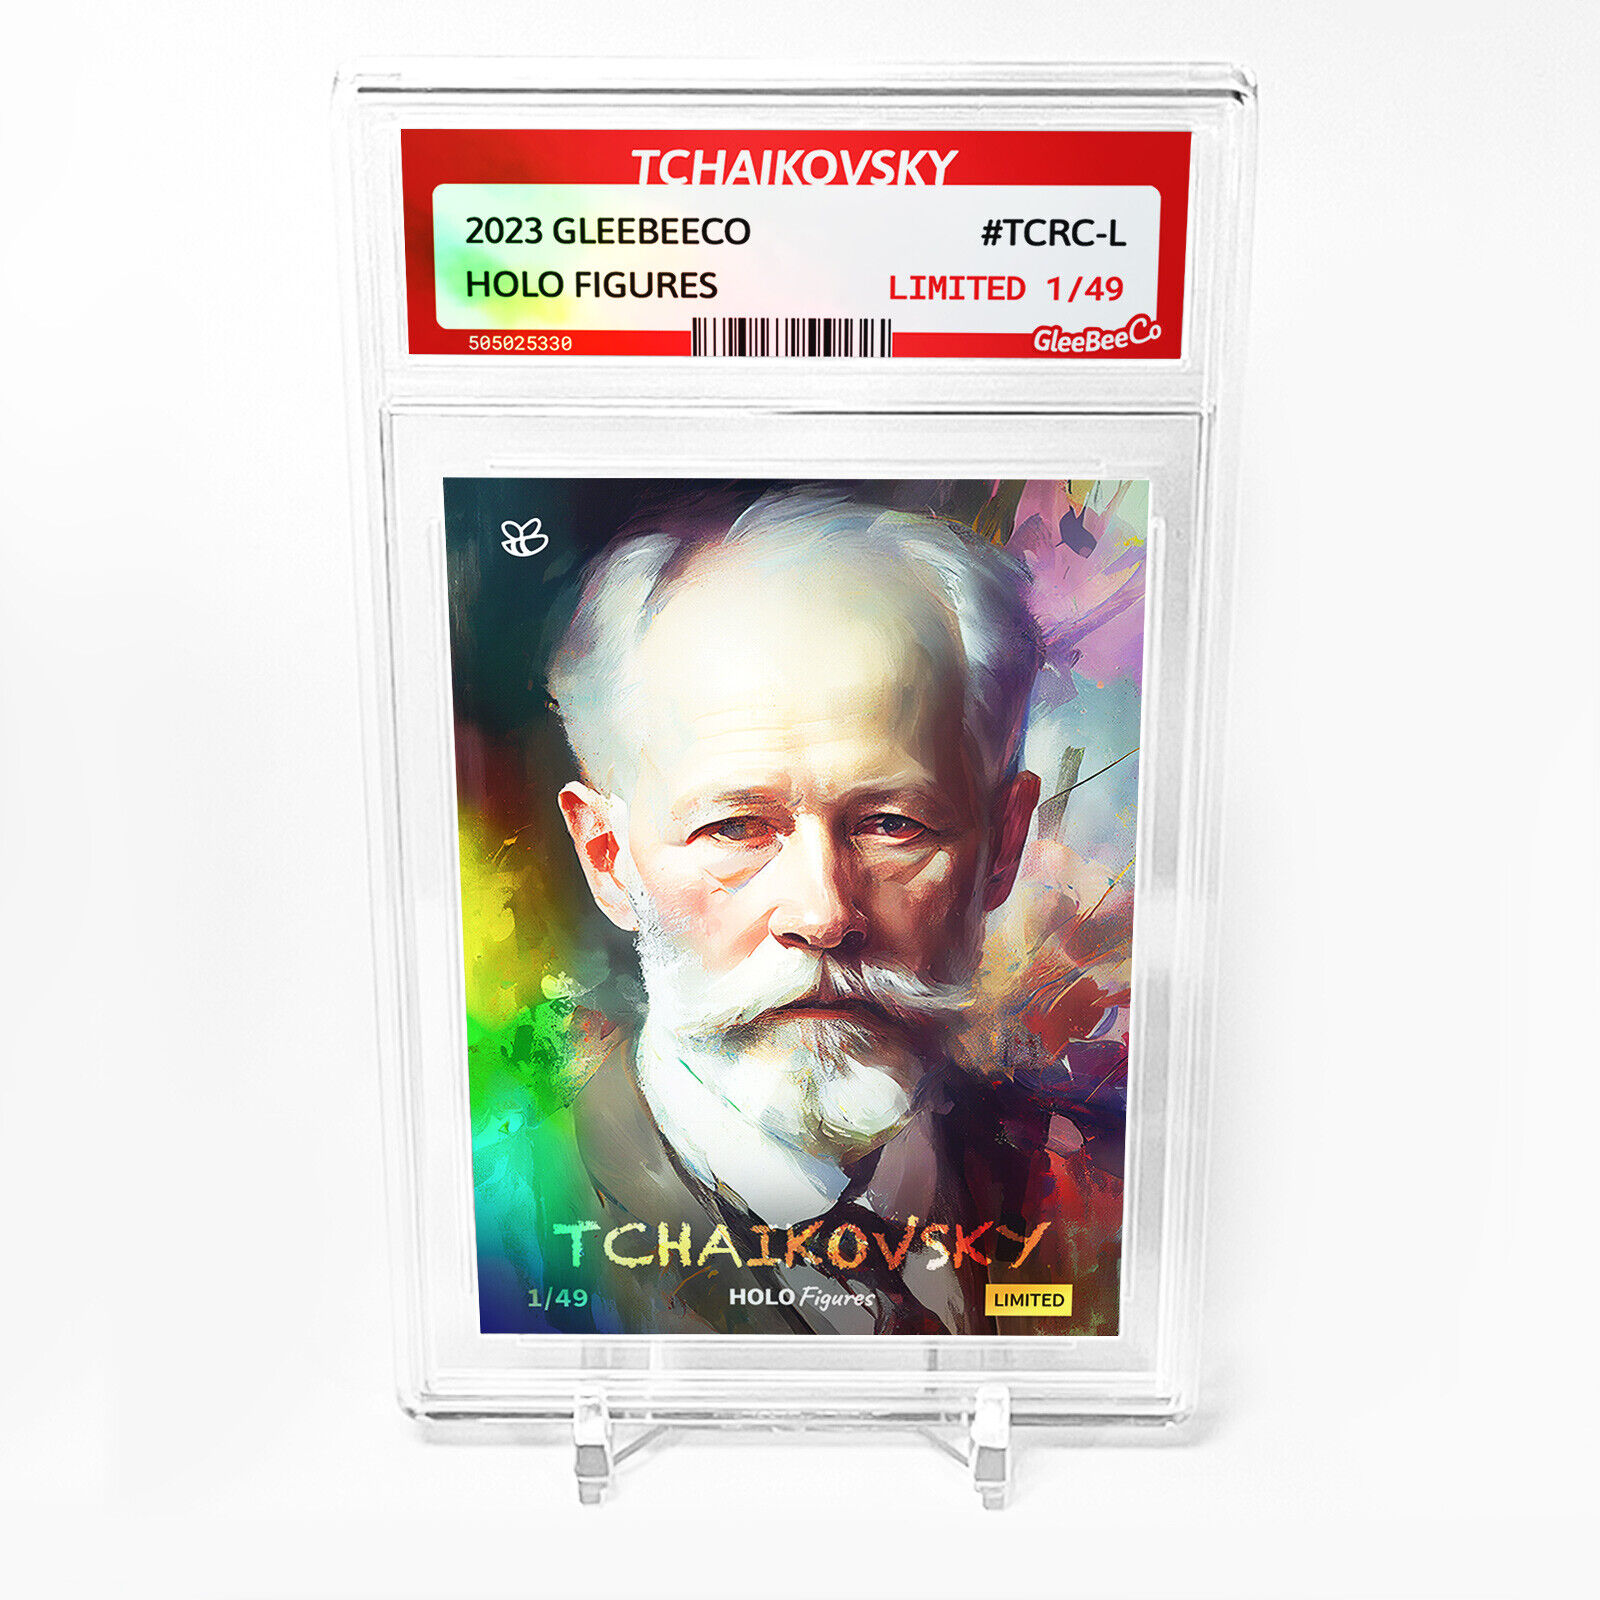 TCHAIKOVSKY Pyotr Ilyich Tchaikovsky Card GleeBeeCo #TCRC-L /49